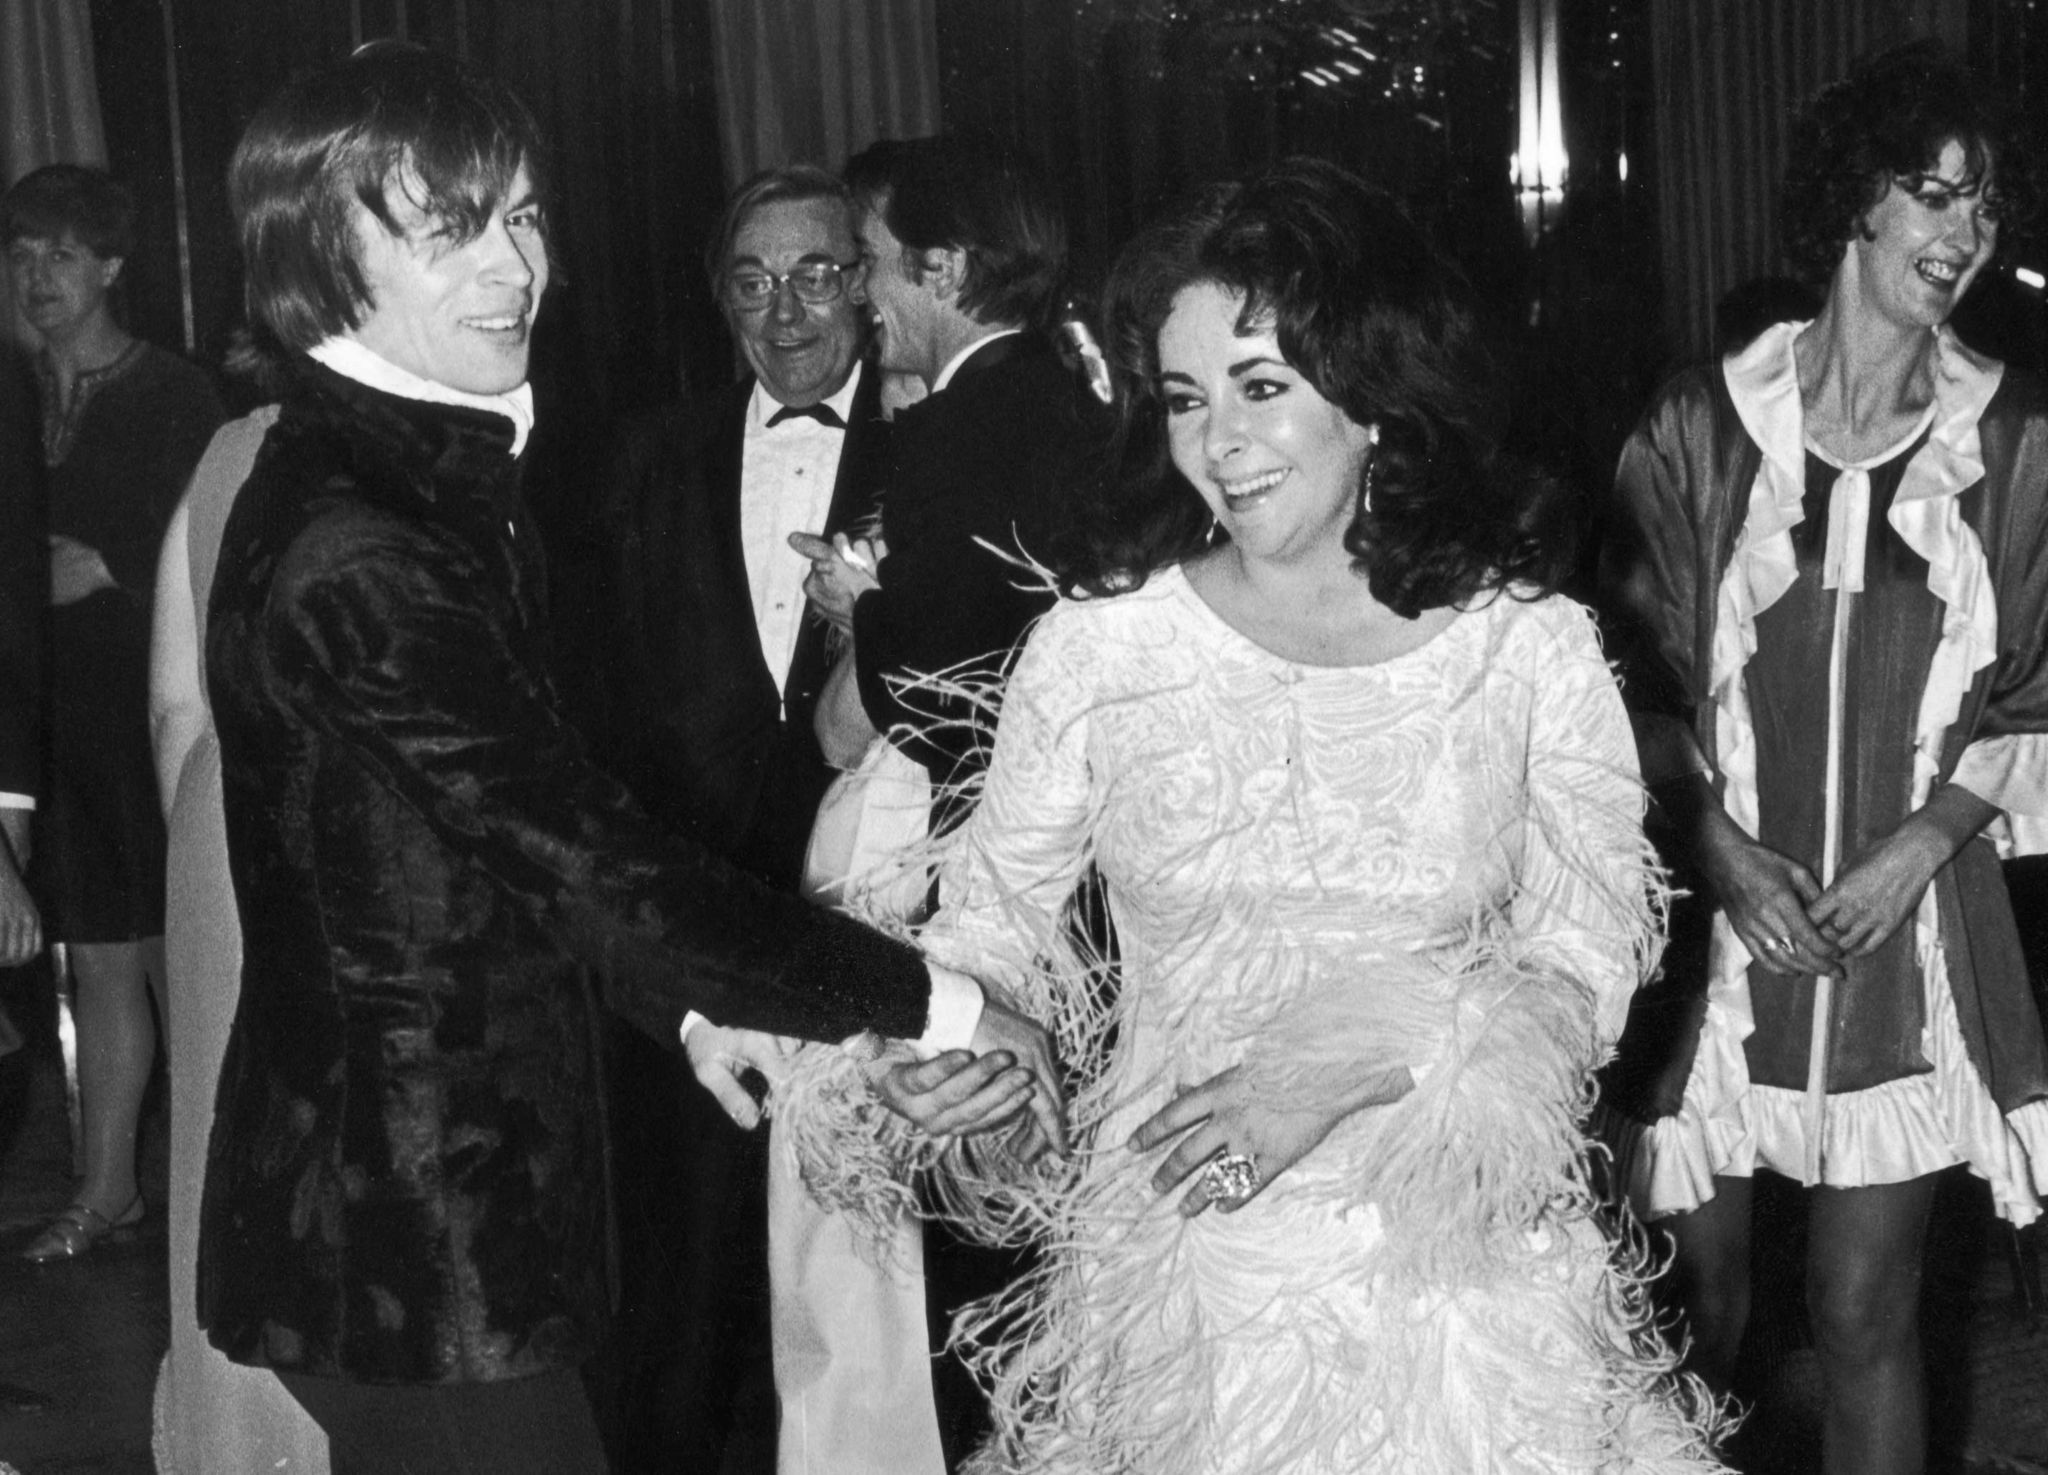 Rudolf Nureyev dancing with Elizabeth Taylor at a party in 1968